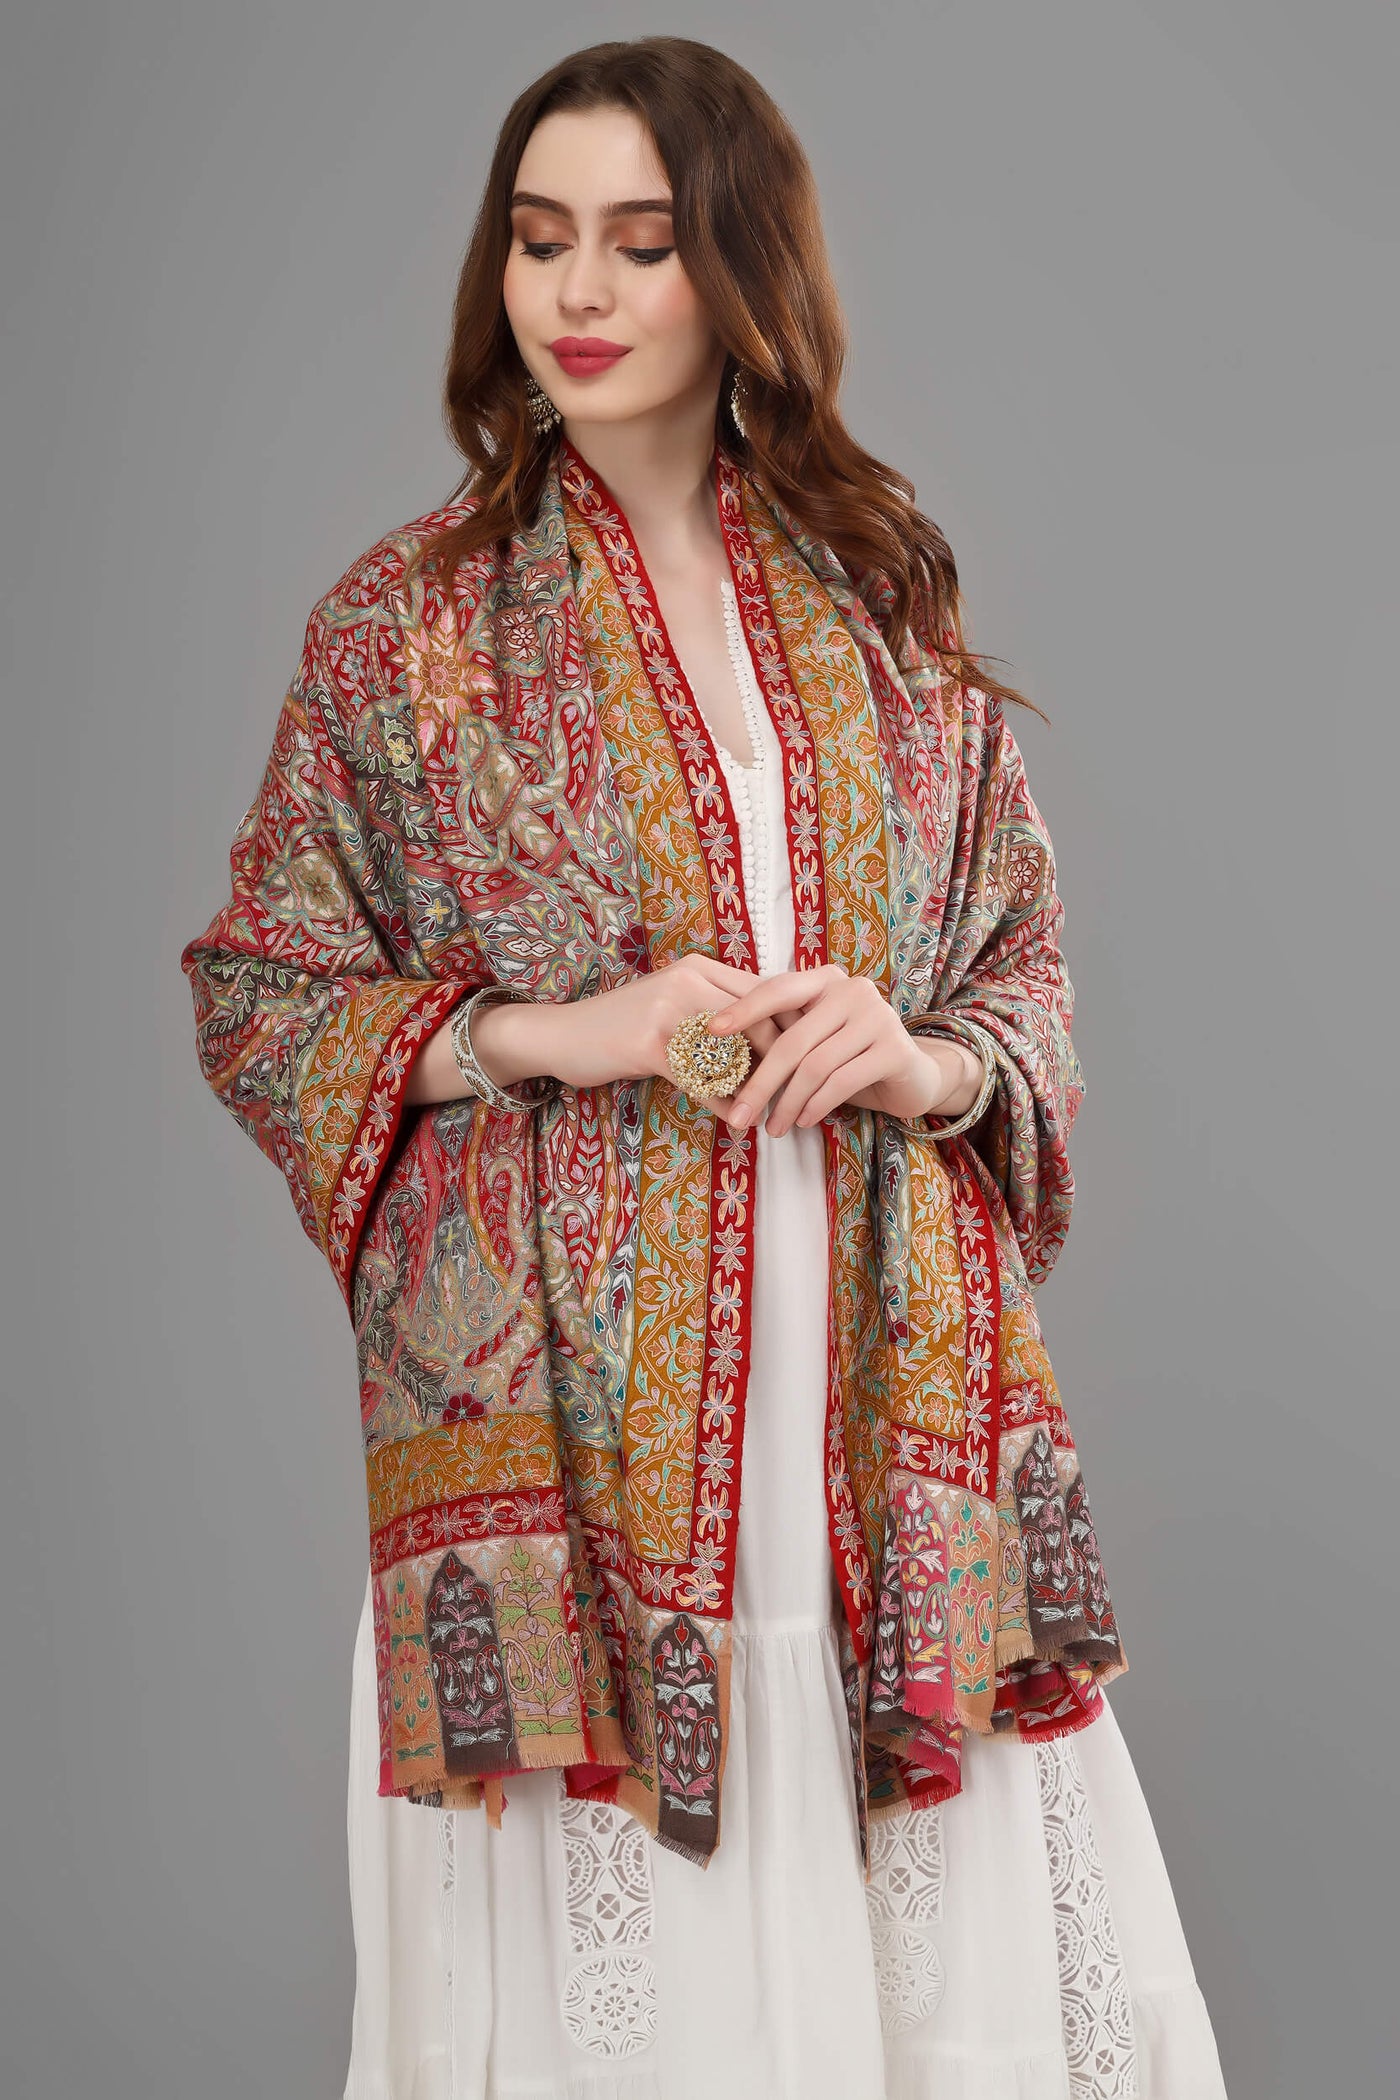 Pashmina Nazima Kalamkari shawl